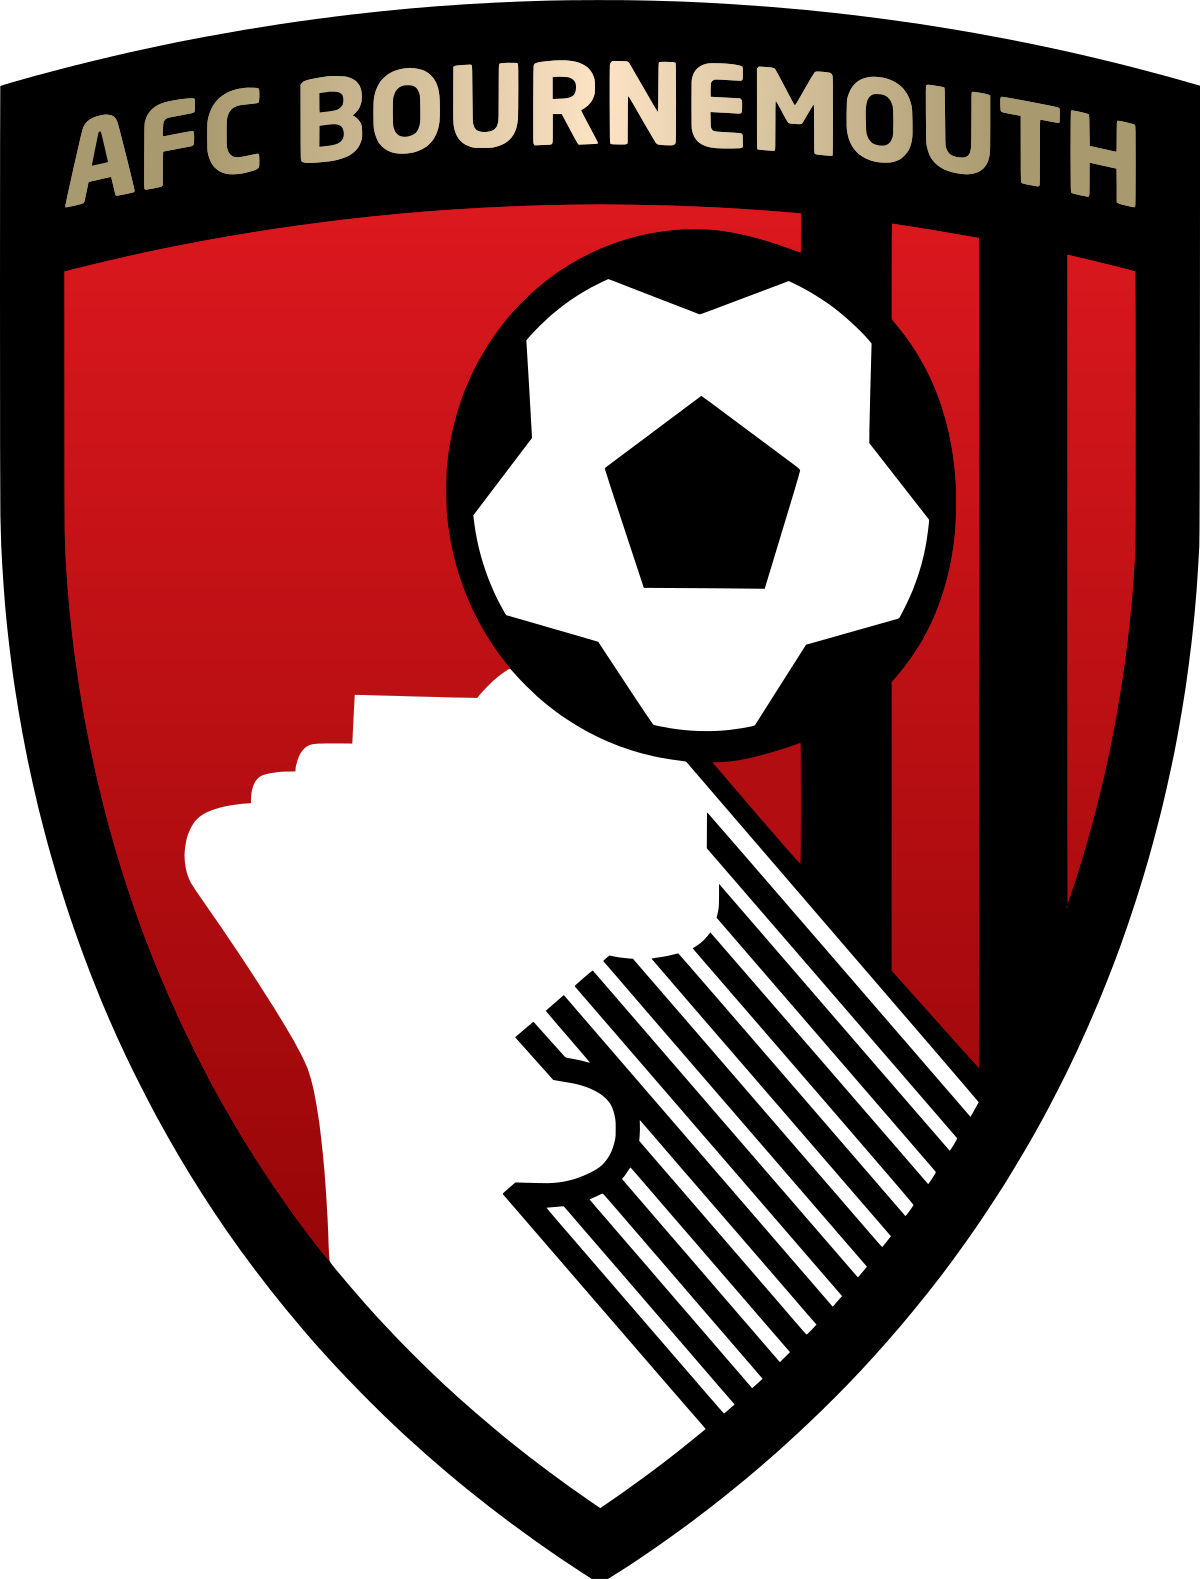 AFC Bournemouth - Wikipedia